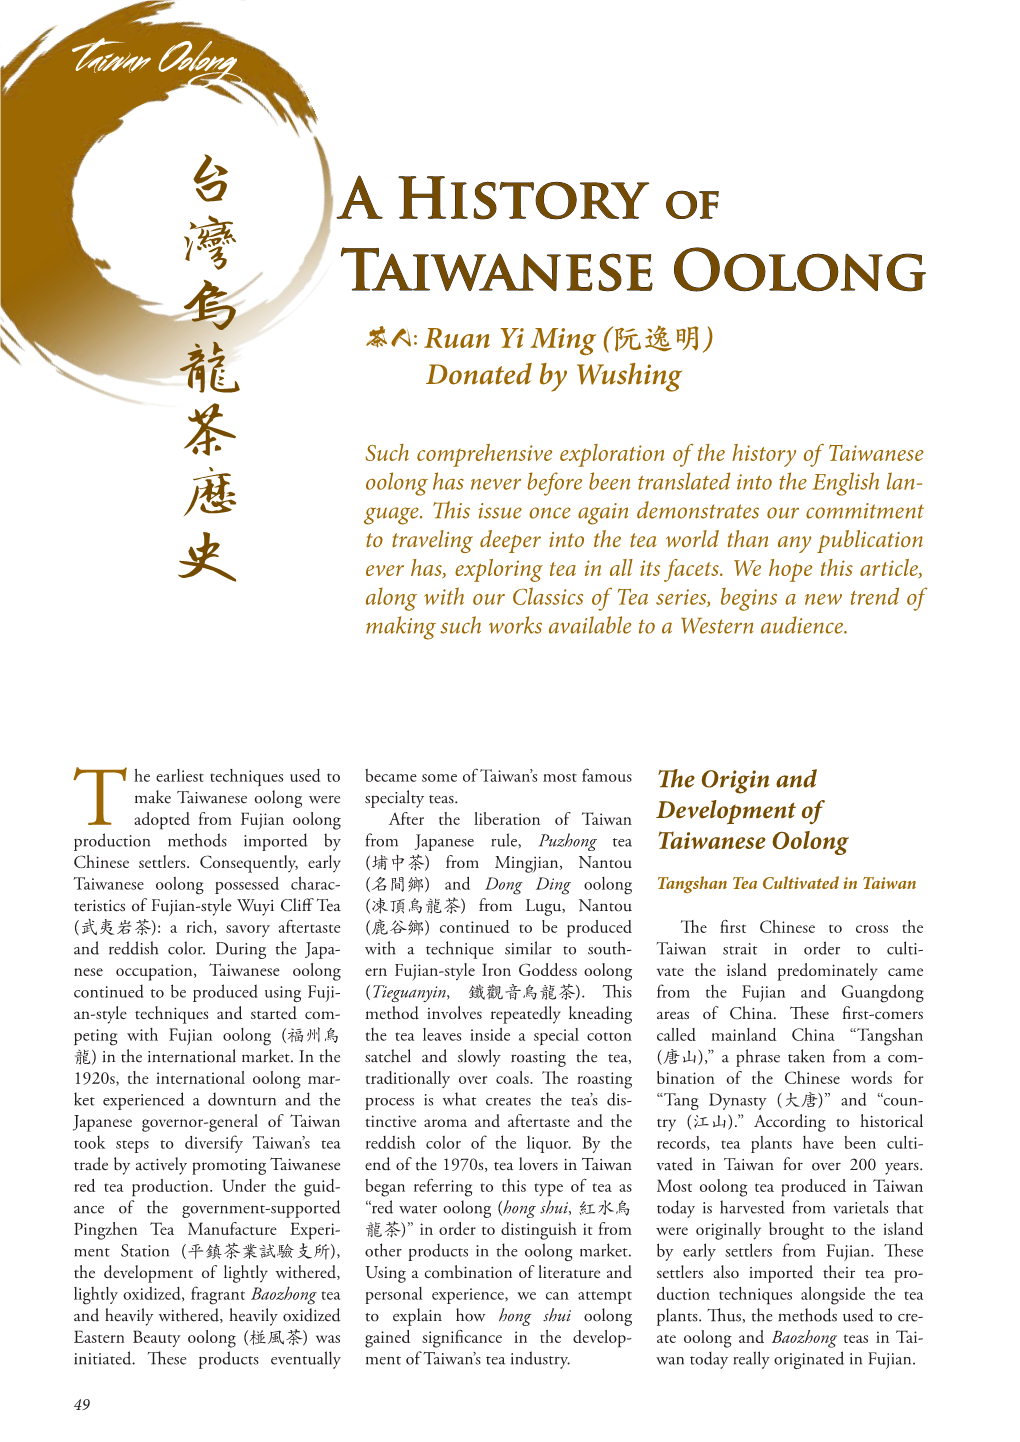 Taiwanese Oolong